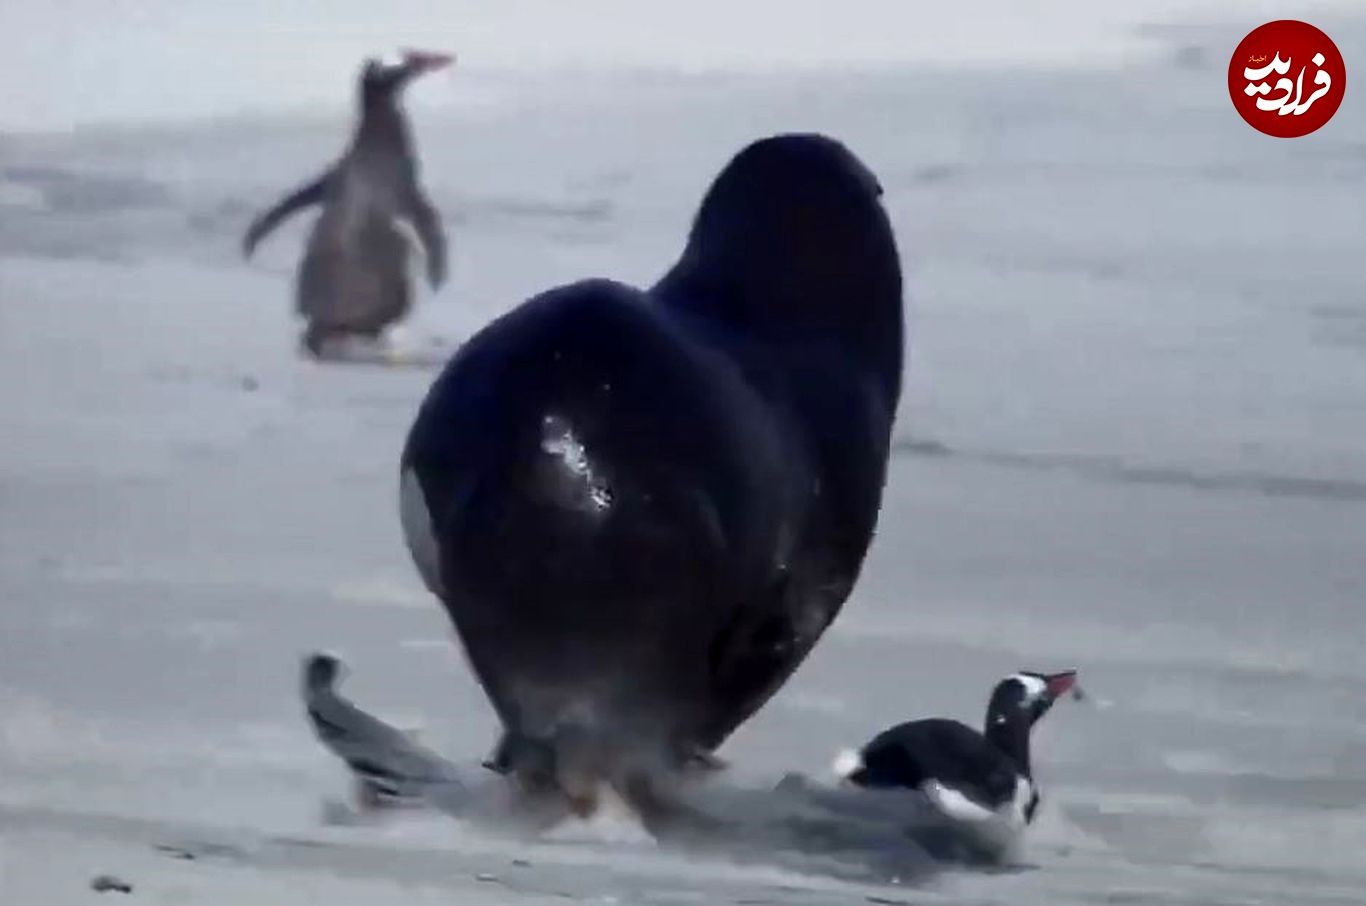 (ویدئو) شیر دریایی یک پنگوئن بخت برگشته را به دام انداخت و کشت!